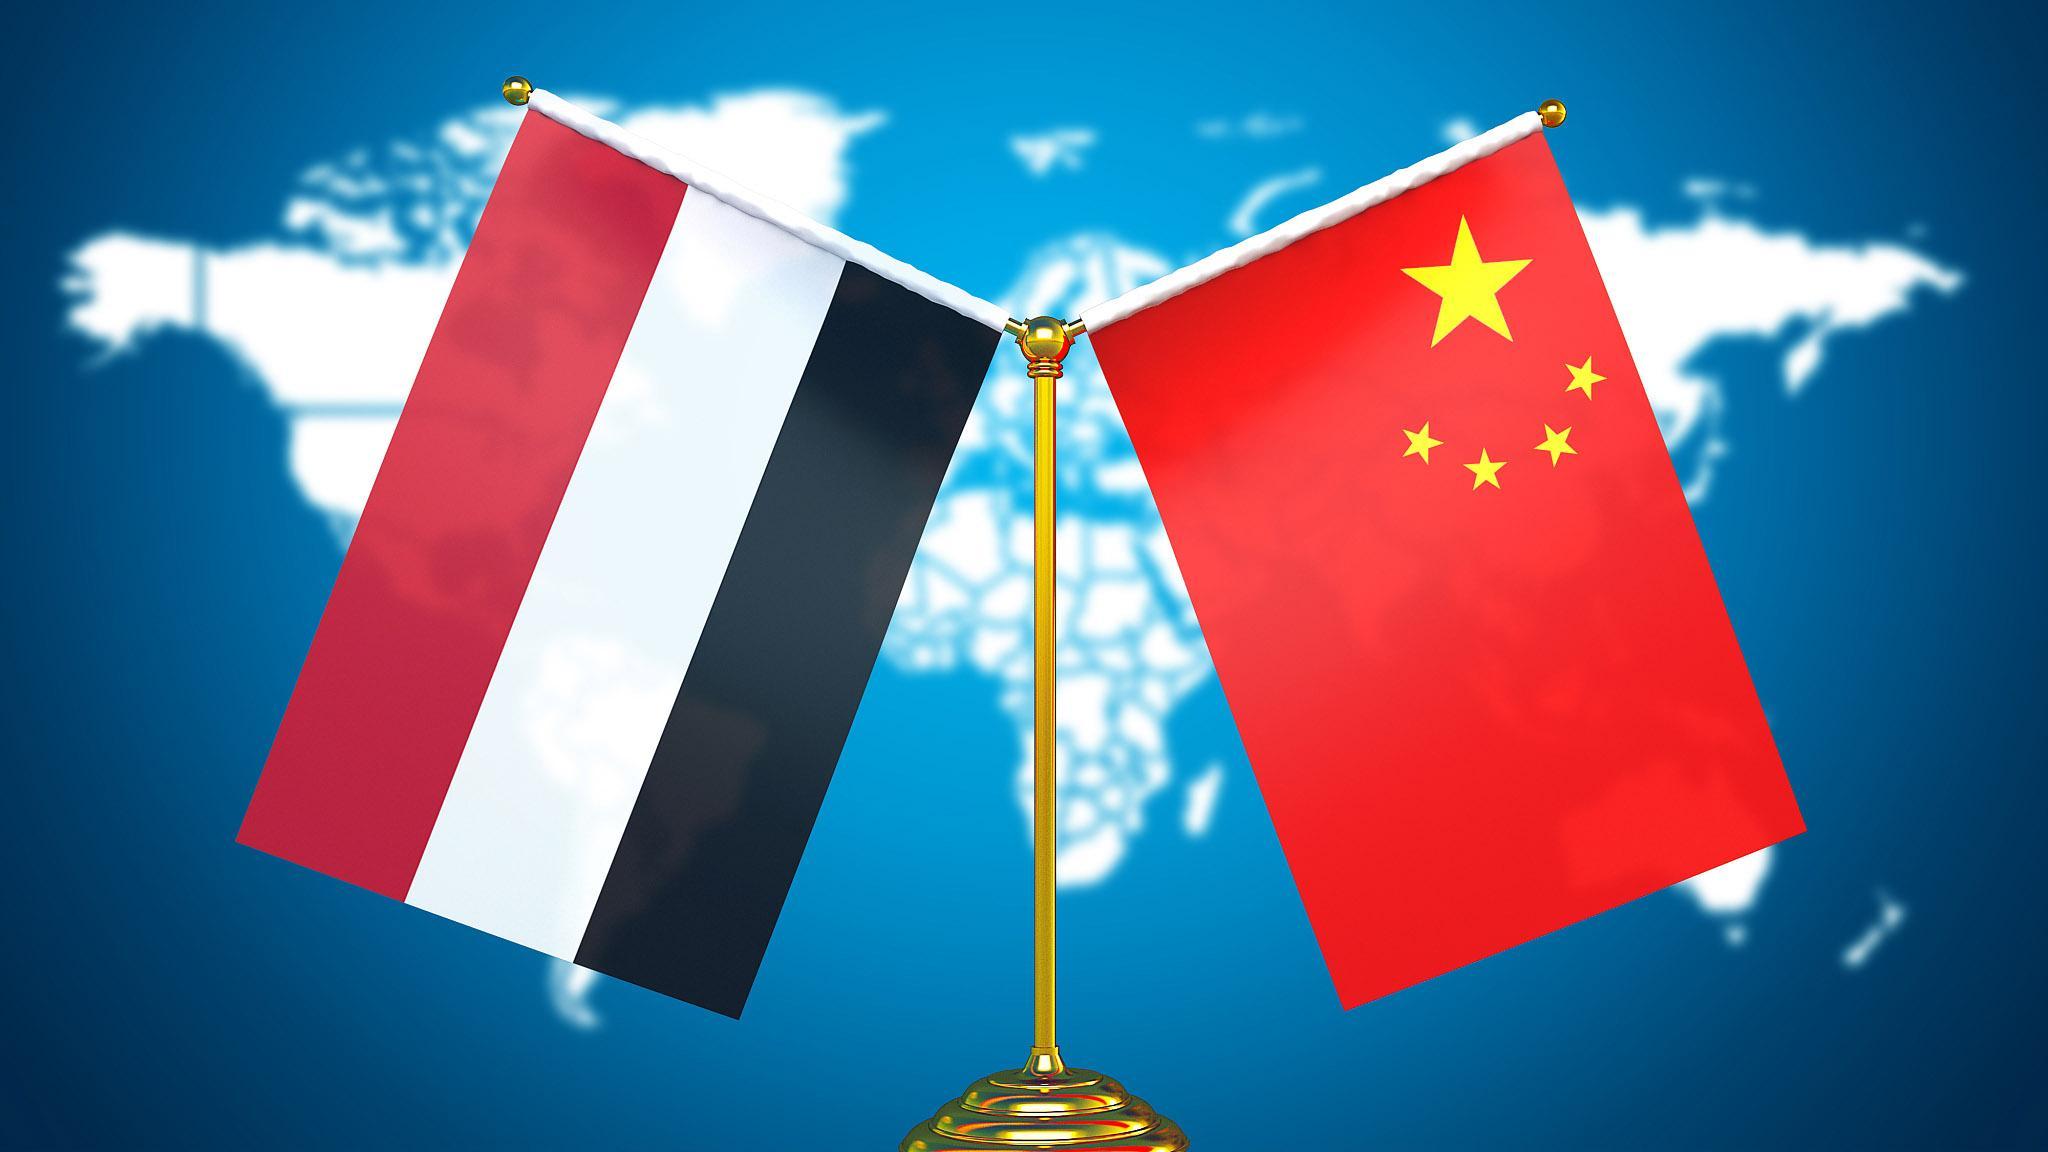 إحياء روح البعثة الطبية الصينية لليمن الاستمرار في تعميق الصداقة الصينية اليمنية التقليدية